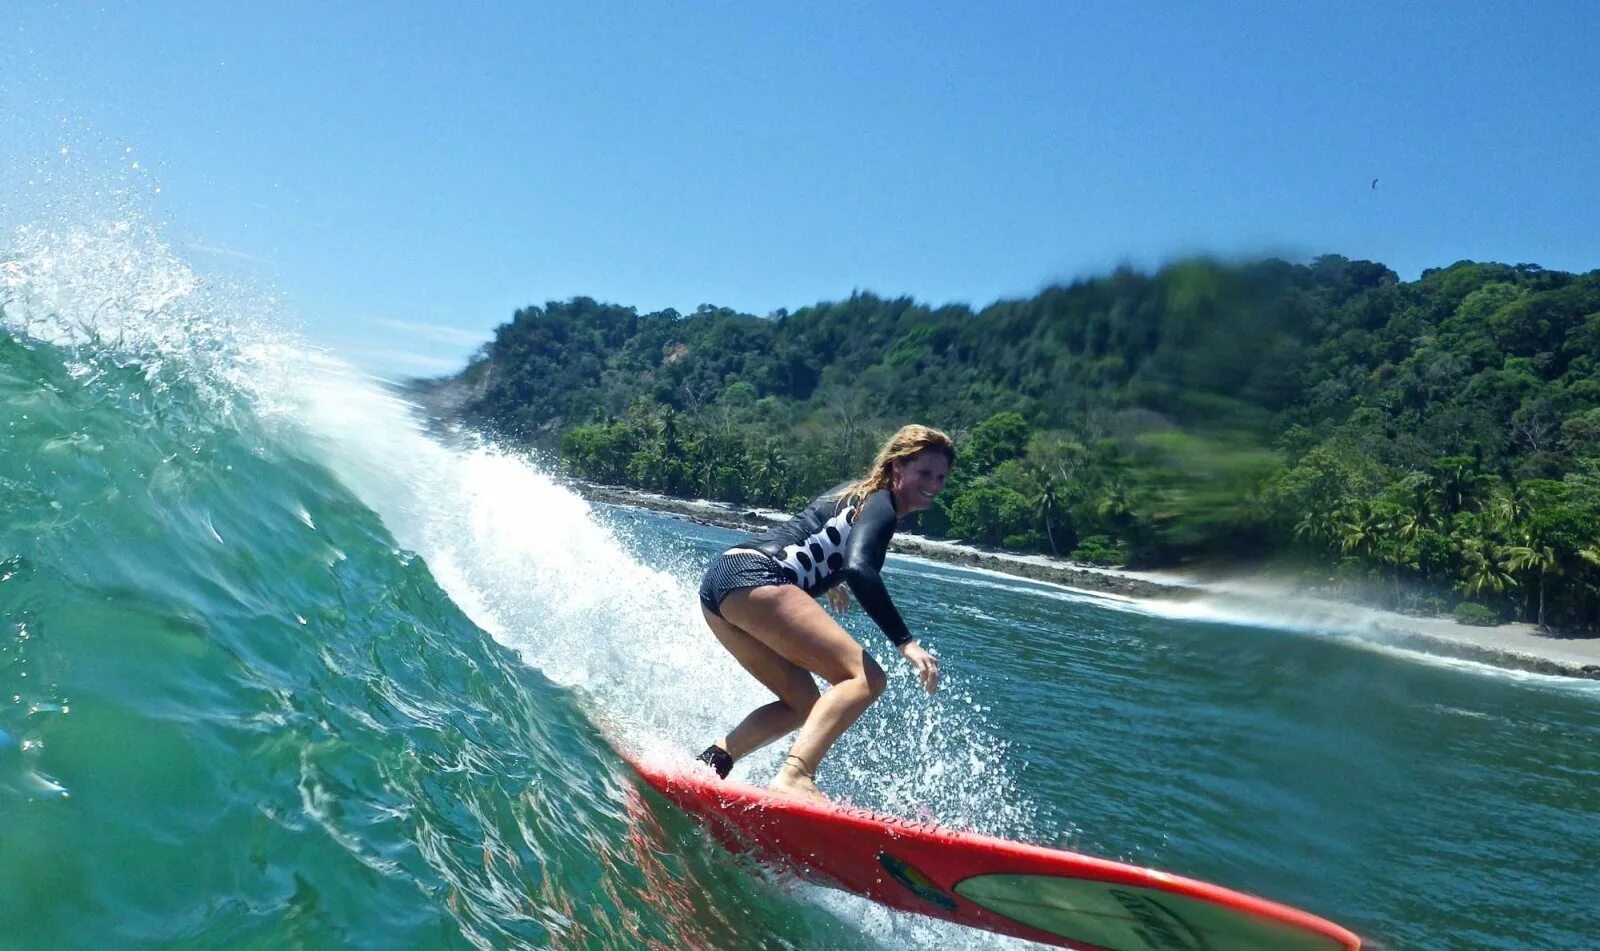 Коста Рика сёрфинг. Павонес Коста Рика серфинг. Коста-Рика серферы. Серфинг в Коста Рике.